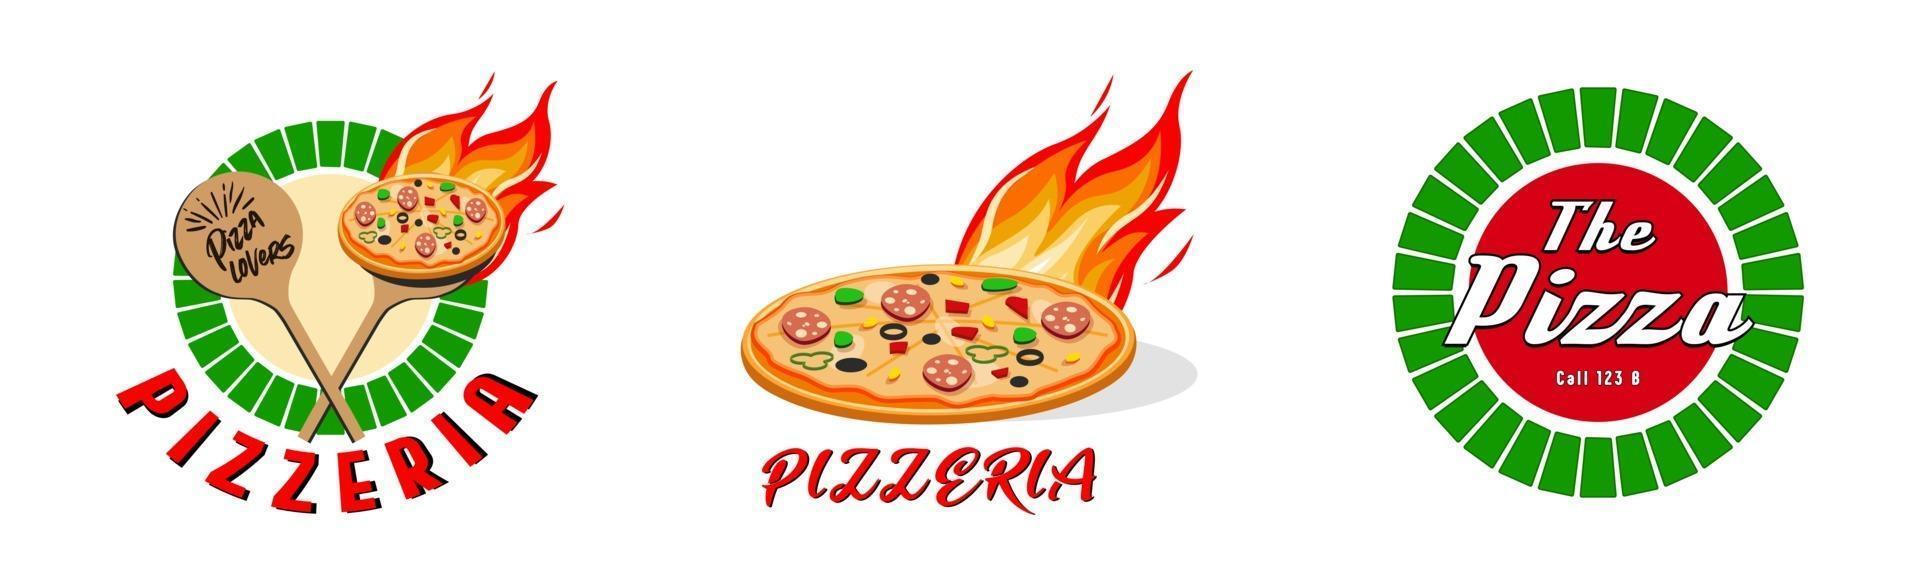 pizzeria, fastfood-logo of label. menuontwerp voor café en restaurant. gratis vector illustratie.